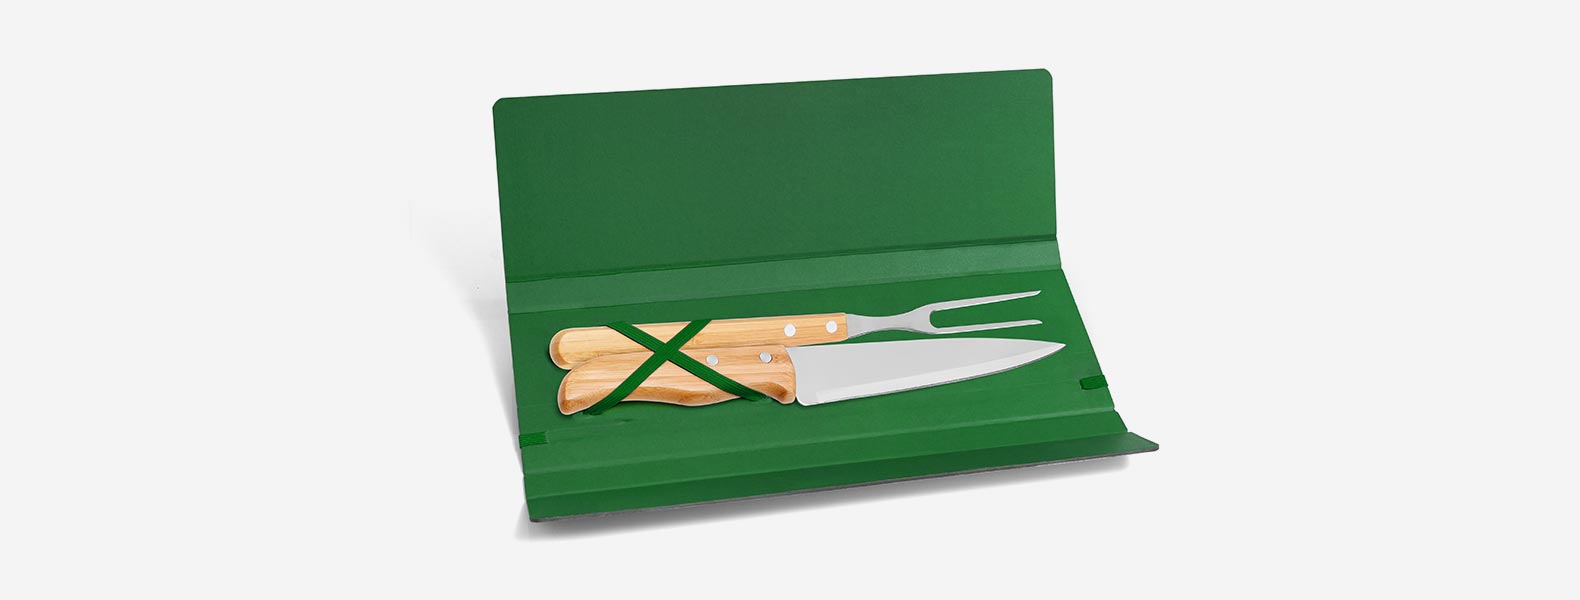 Conjunto composto por uma faca 7” e um garfo trinchante, ambos com cabos em Bambu e lâminas em Aço Inox com rebites resistentes. Estão organizados em uma pasta verde com elásticos.